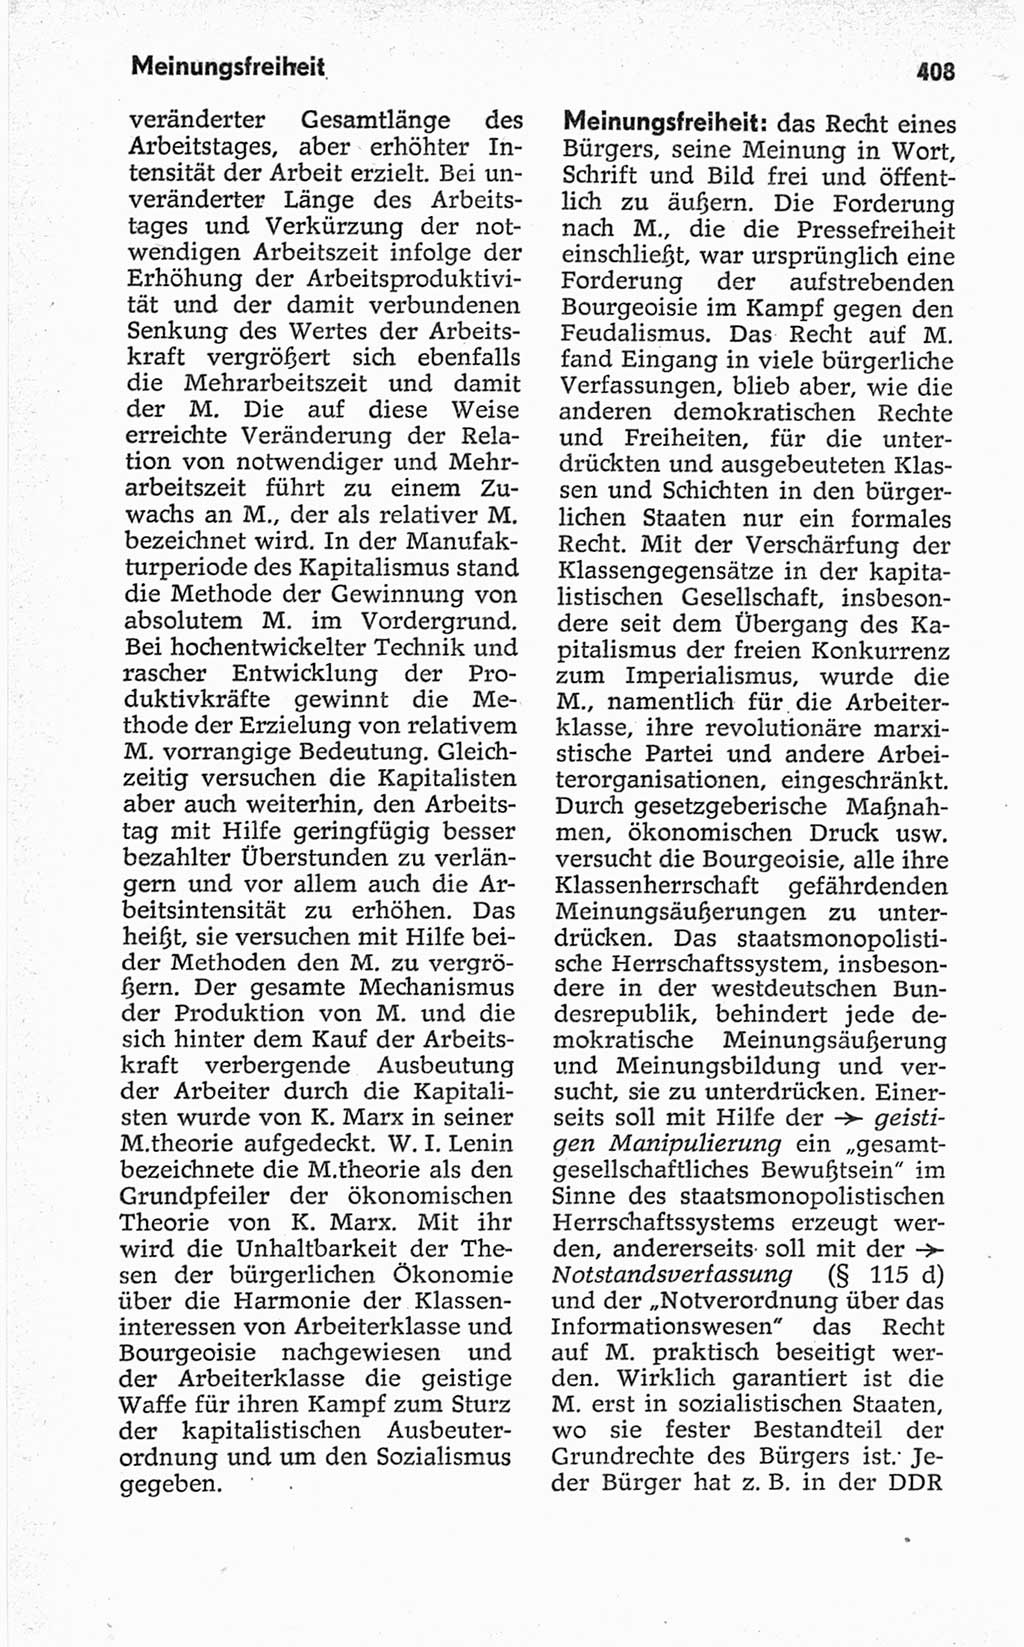 Kleines politisches Wörterbuch [Deutsche Demokratische Republik (DDR)] 1967, Seite 408 (Kl. pol. Wb. DDR 1967, S. 408)